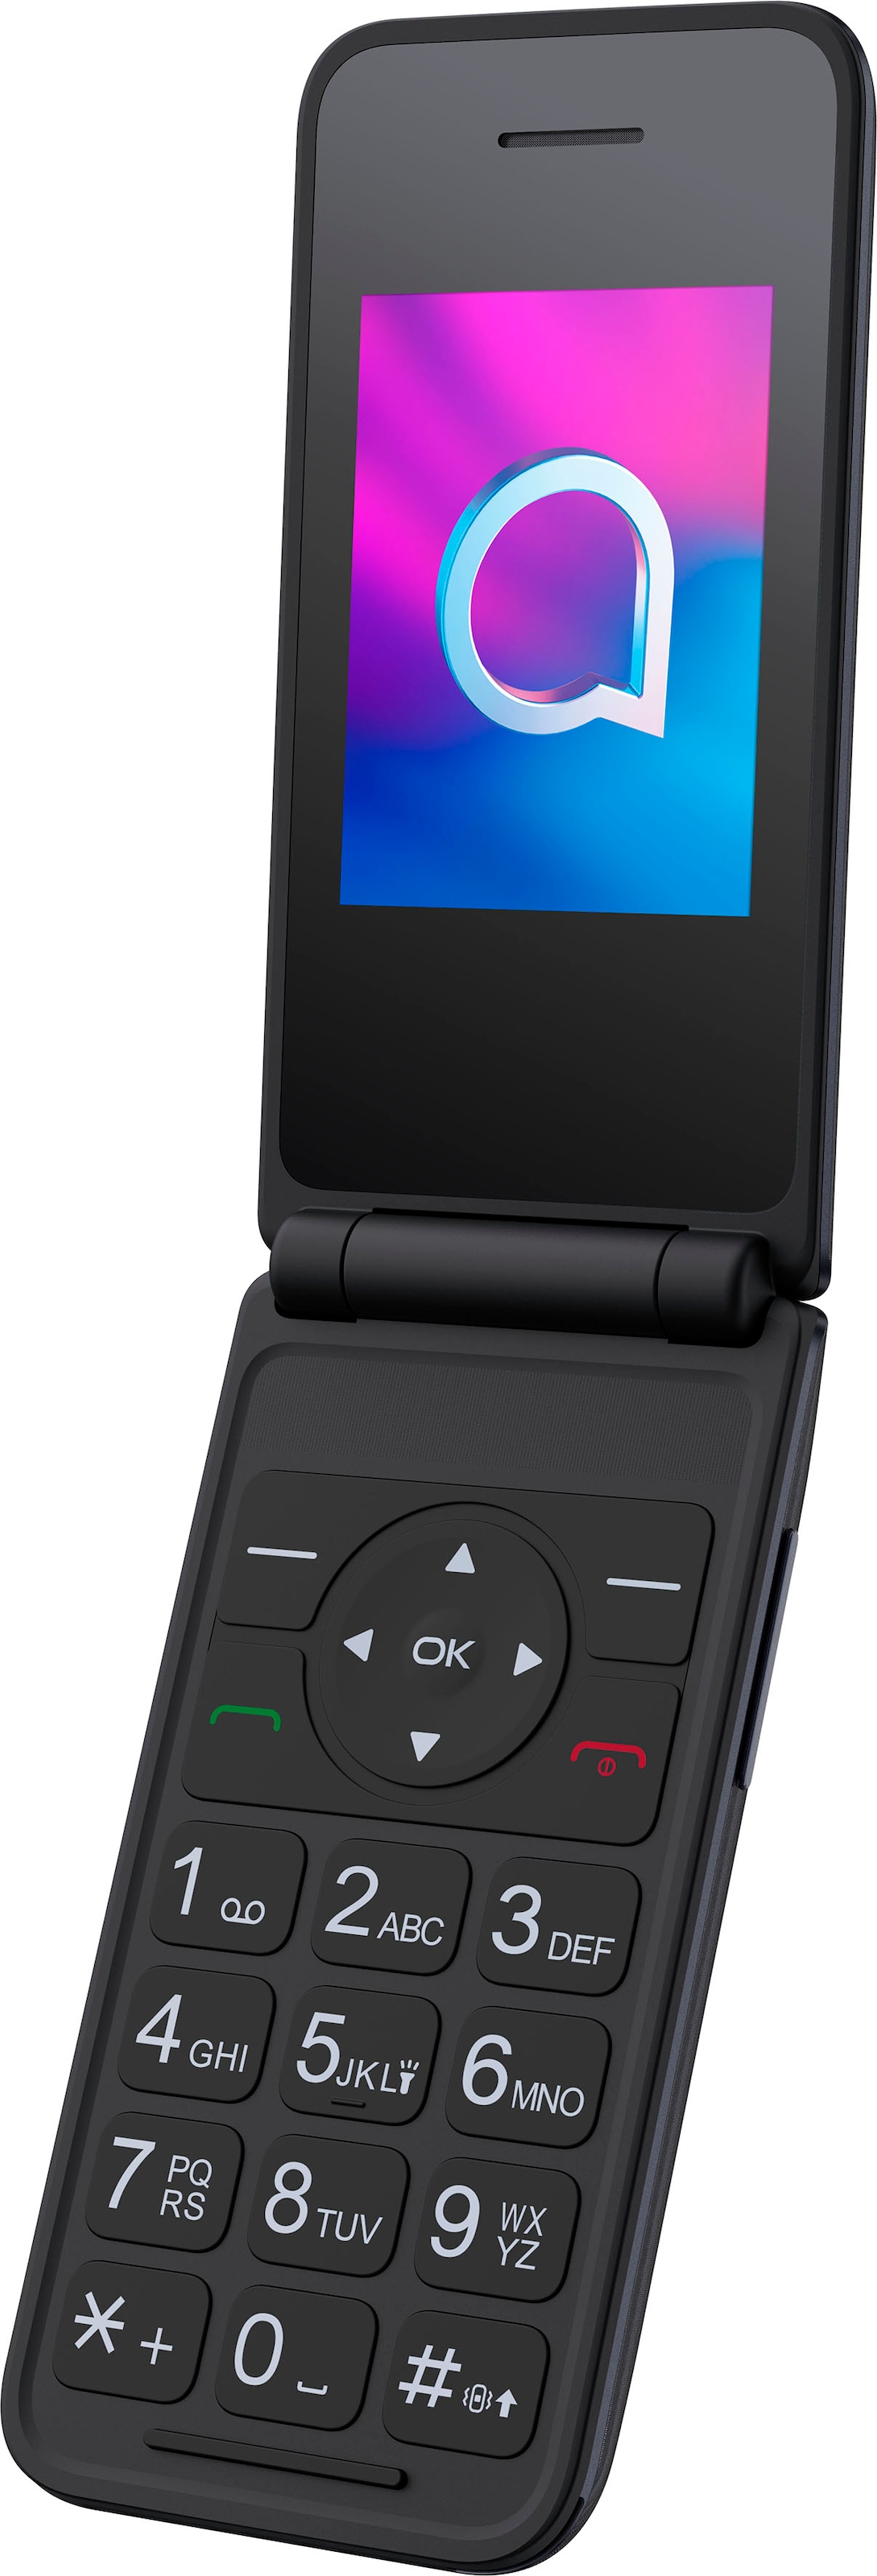 Alcatel Handy »3082«, Dark Gray, Zoll, MP online kaufen Speicherplatz, cm/2,4 6,1 Kamera 0,13 1,3 GB